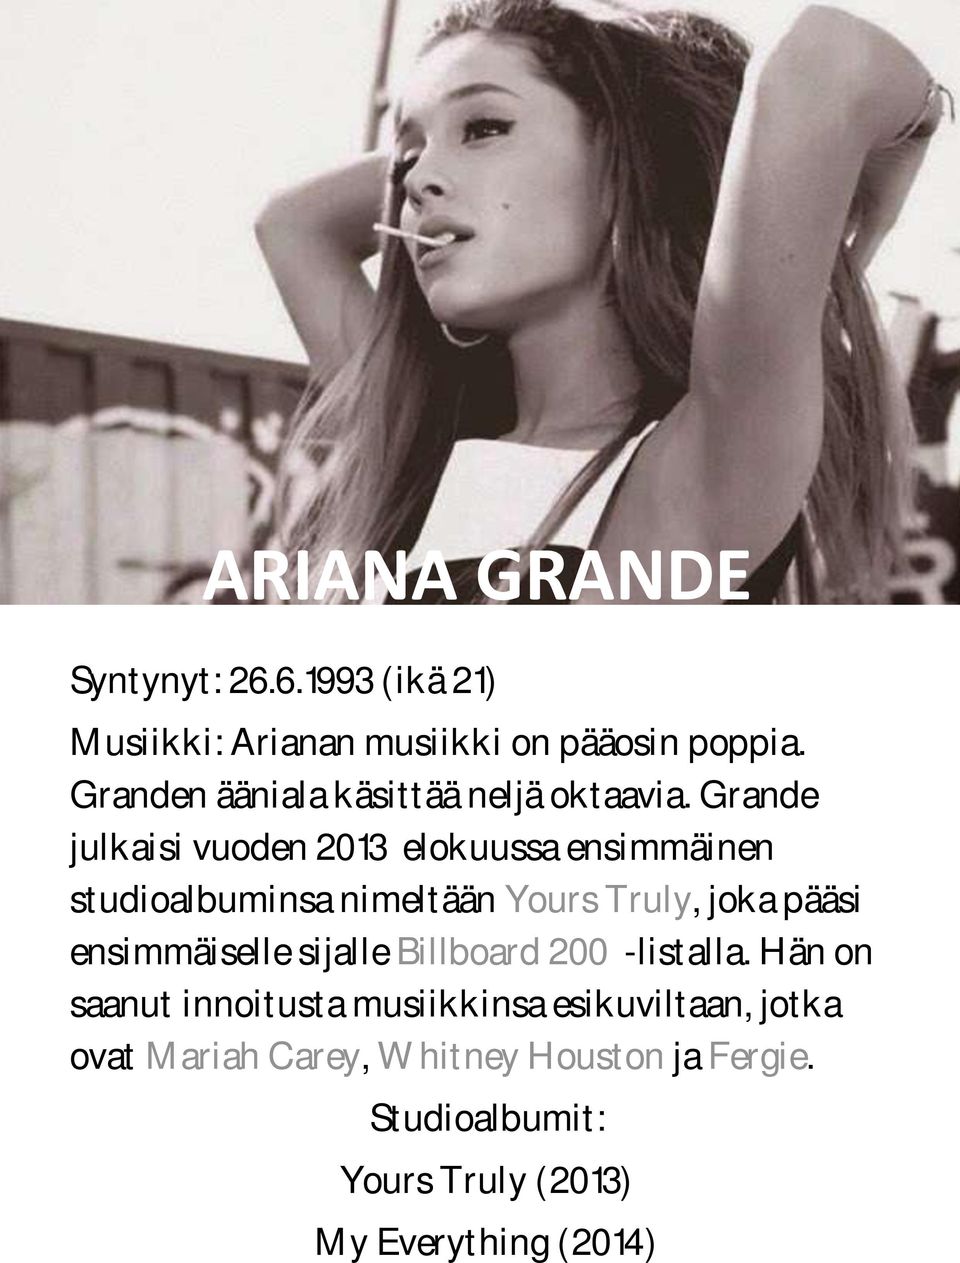 Grande julkaisi vuoden 2013 elokuussa ensimmäinen studioalbuminsa nimeltään Yours Truly, joka pääsi